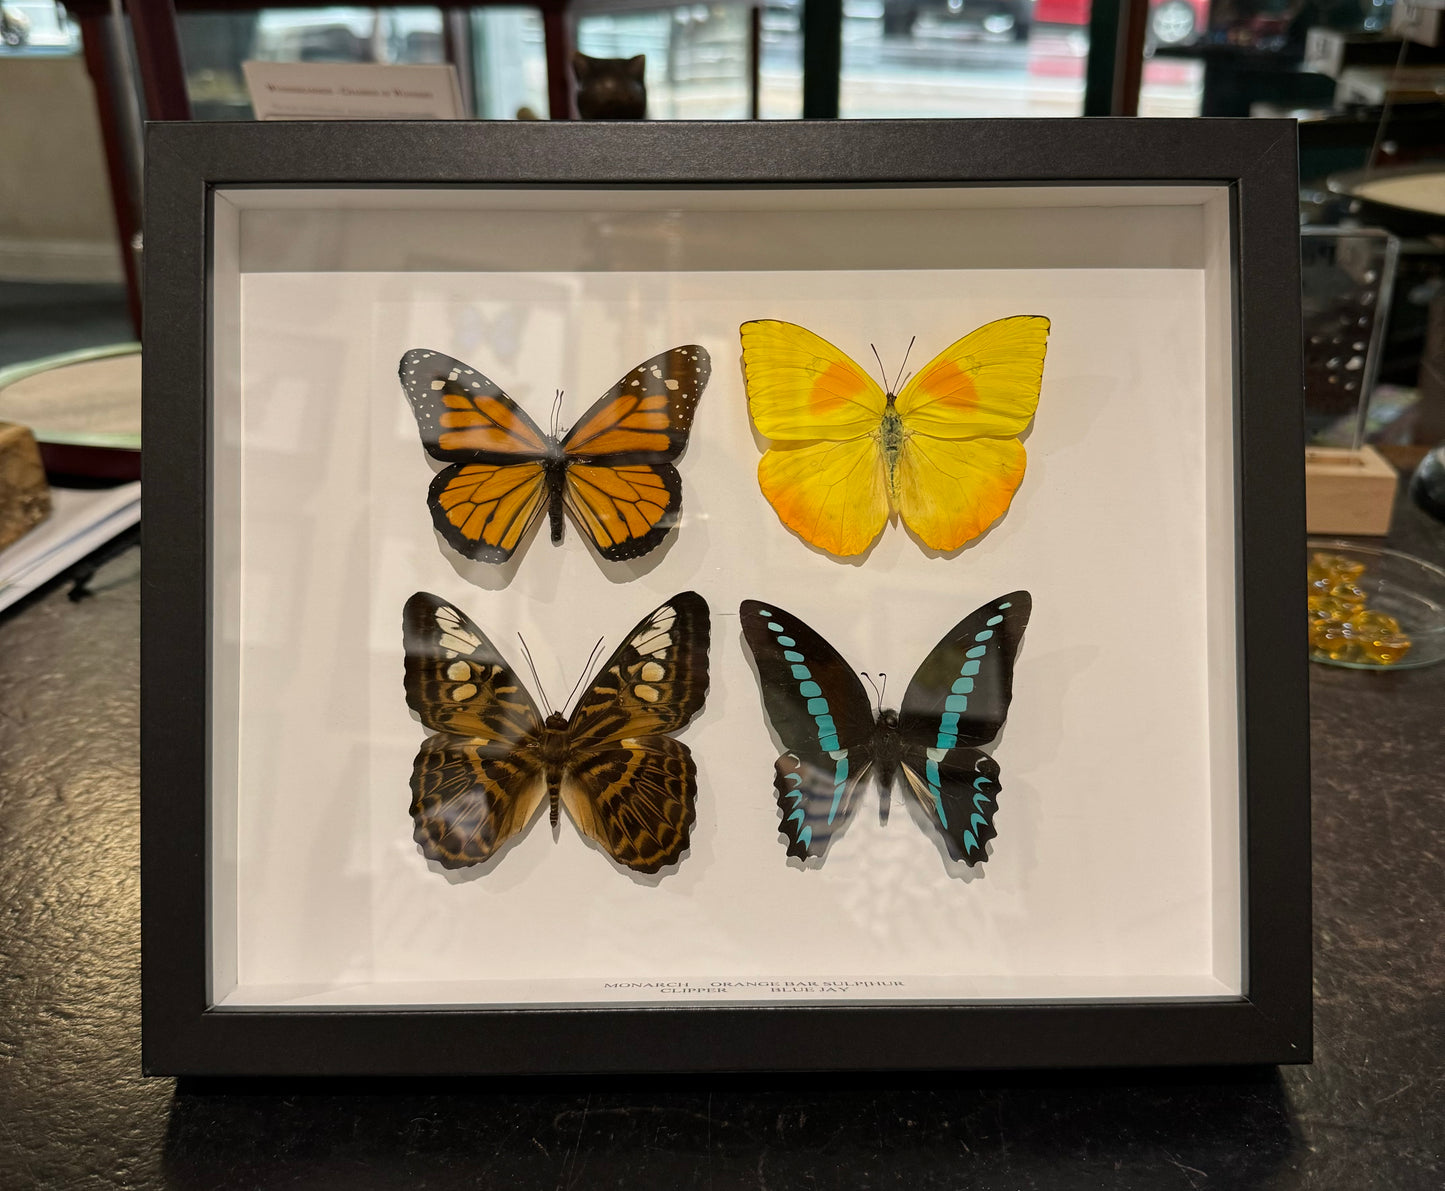 4 butterflies